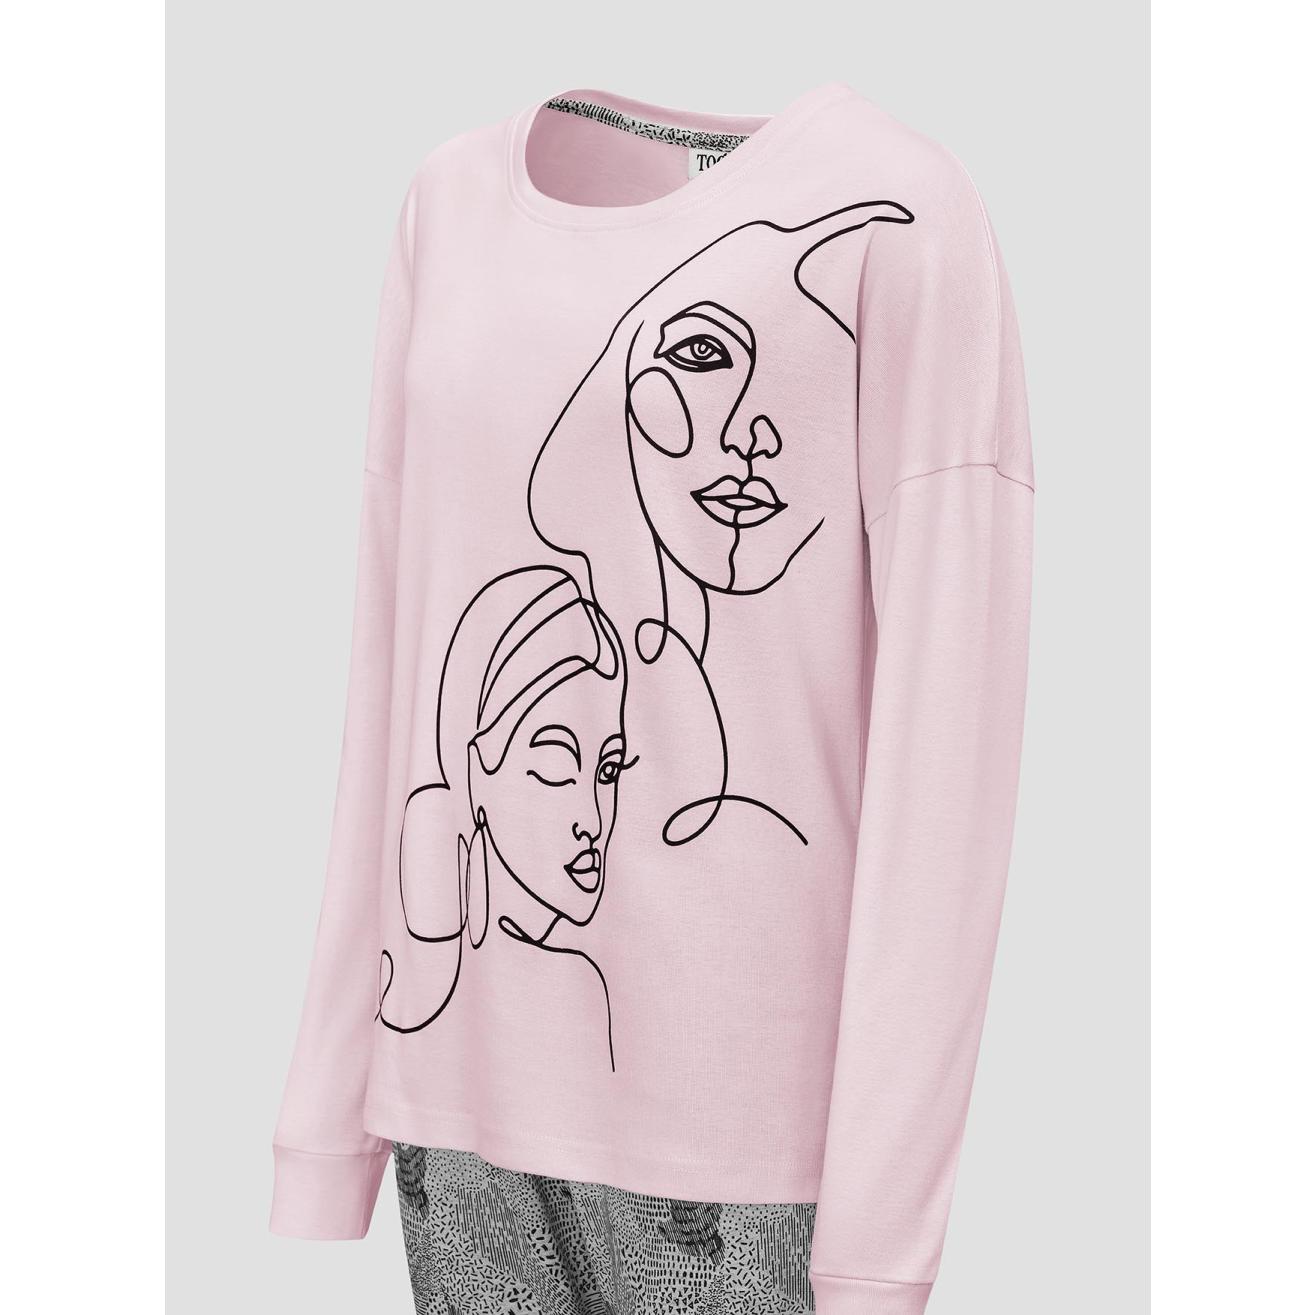 Пижама для девочек Togas Teens Кэрри розово-серая 158 см, цвет розовый, размер 158 см - фото 3